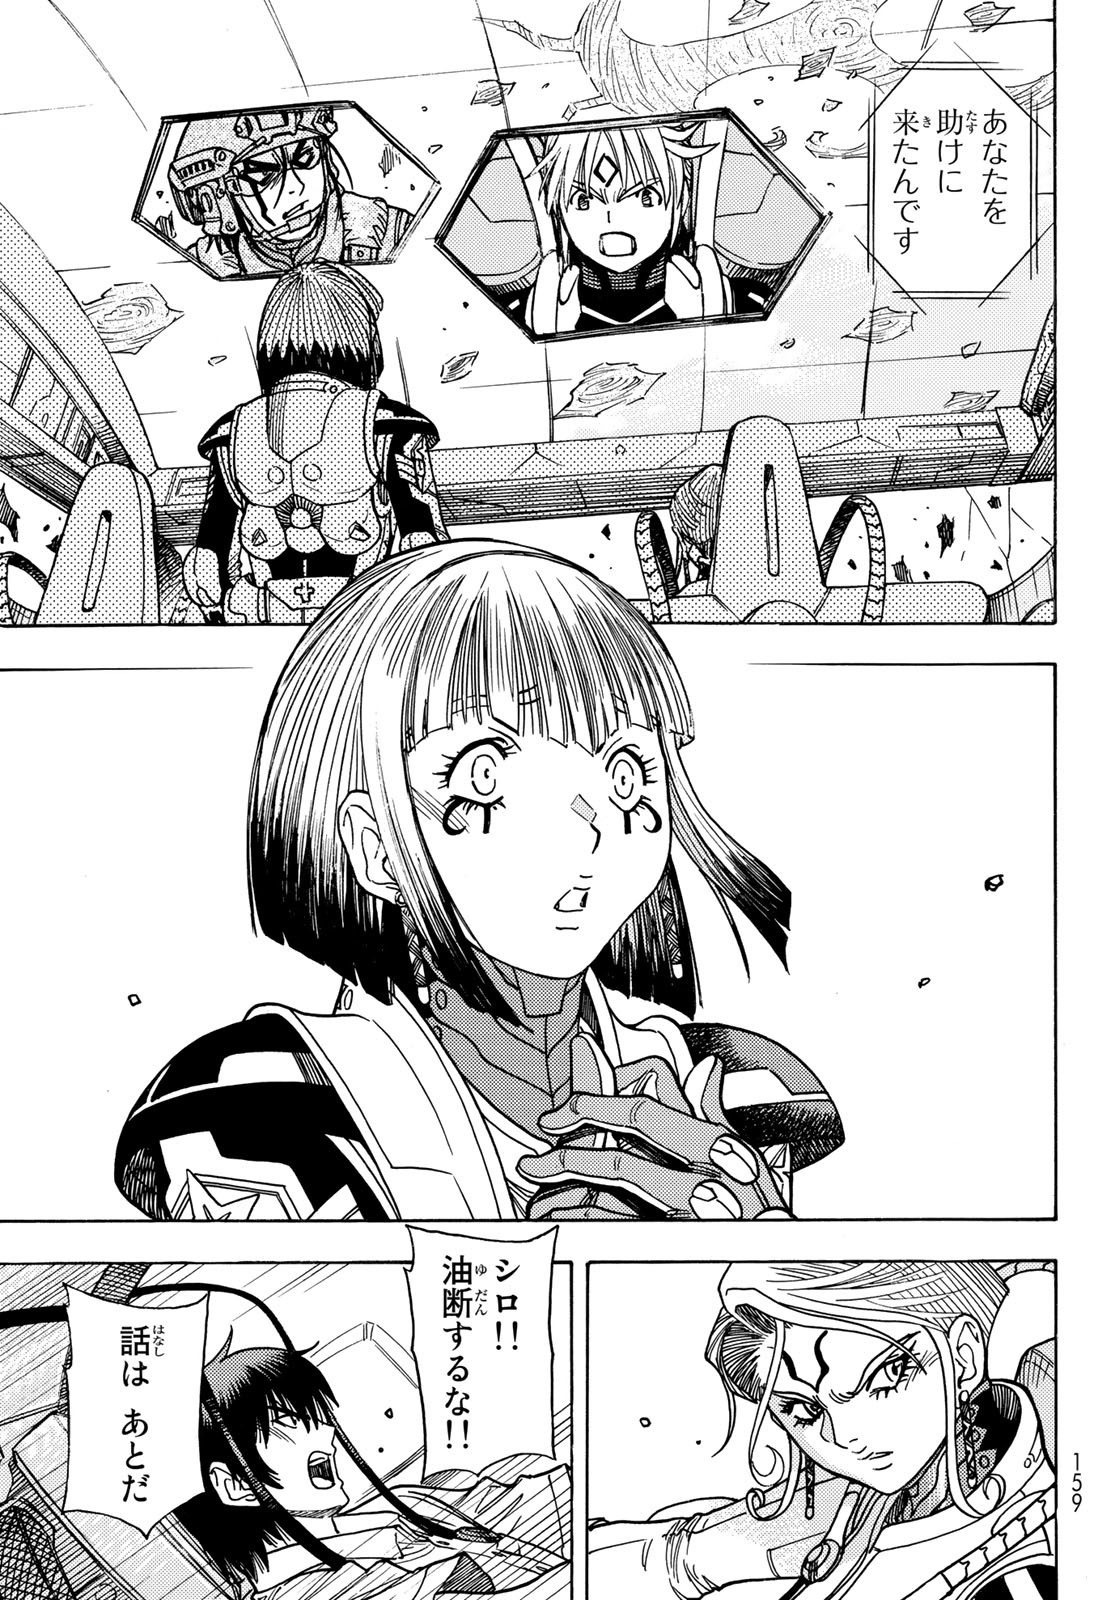 Mugou no Schnell Gear: Chikyuugai Kisouka AI - Chapter 48 - Page 5